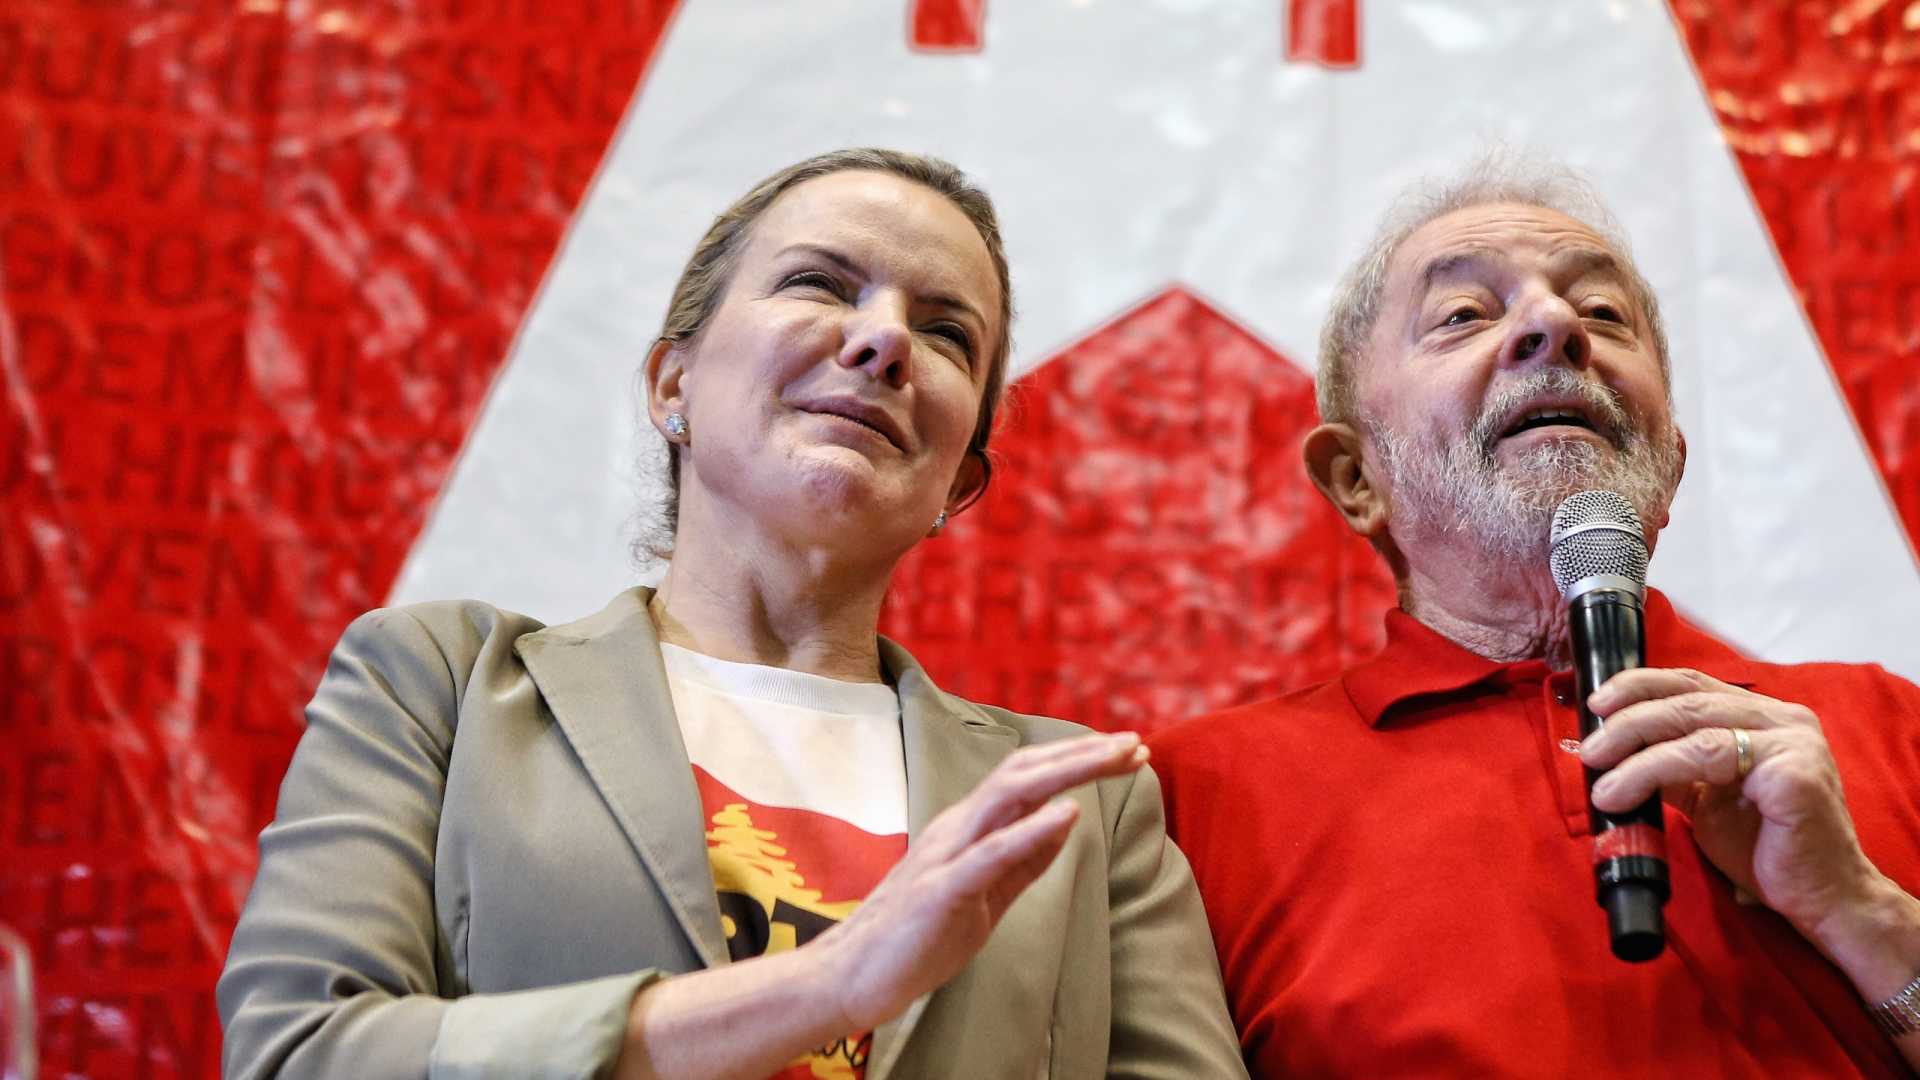 Partidos lançam frente em defesa da candidatura de Lula